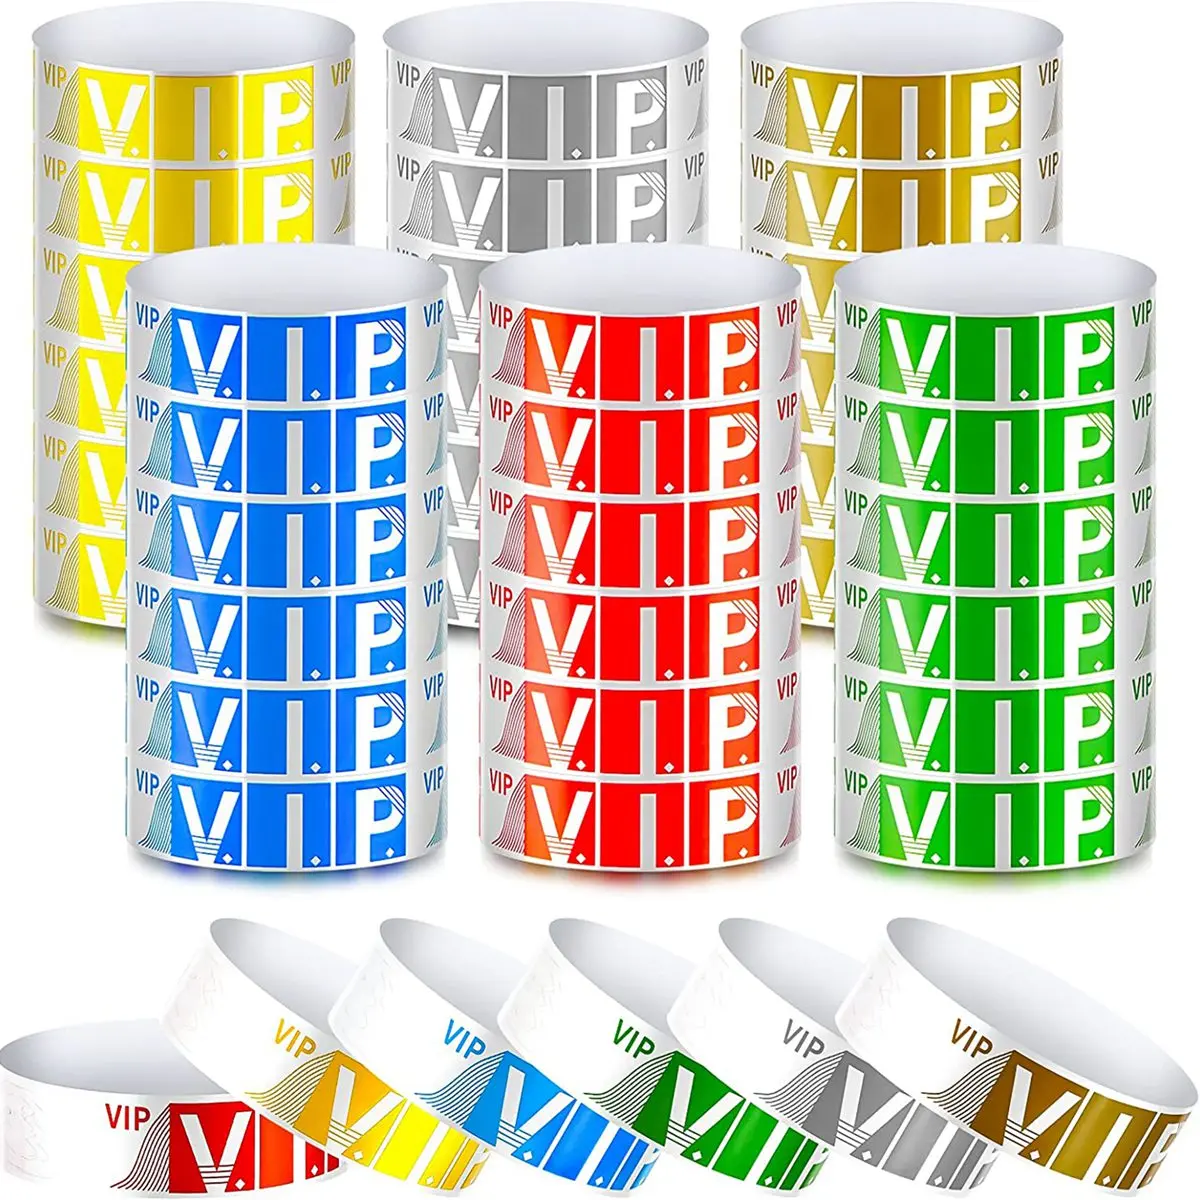 

600 Упаковка Бумажных браслетов VIP, водонепроницаемые наручные браслеты VIP, неоновые цветные наручные браслеты, разнообразные для мероприятий